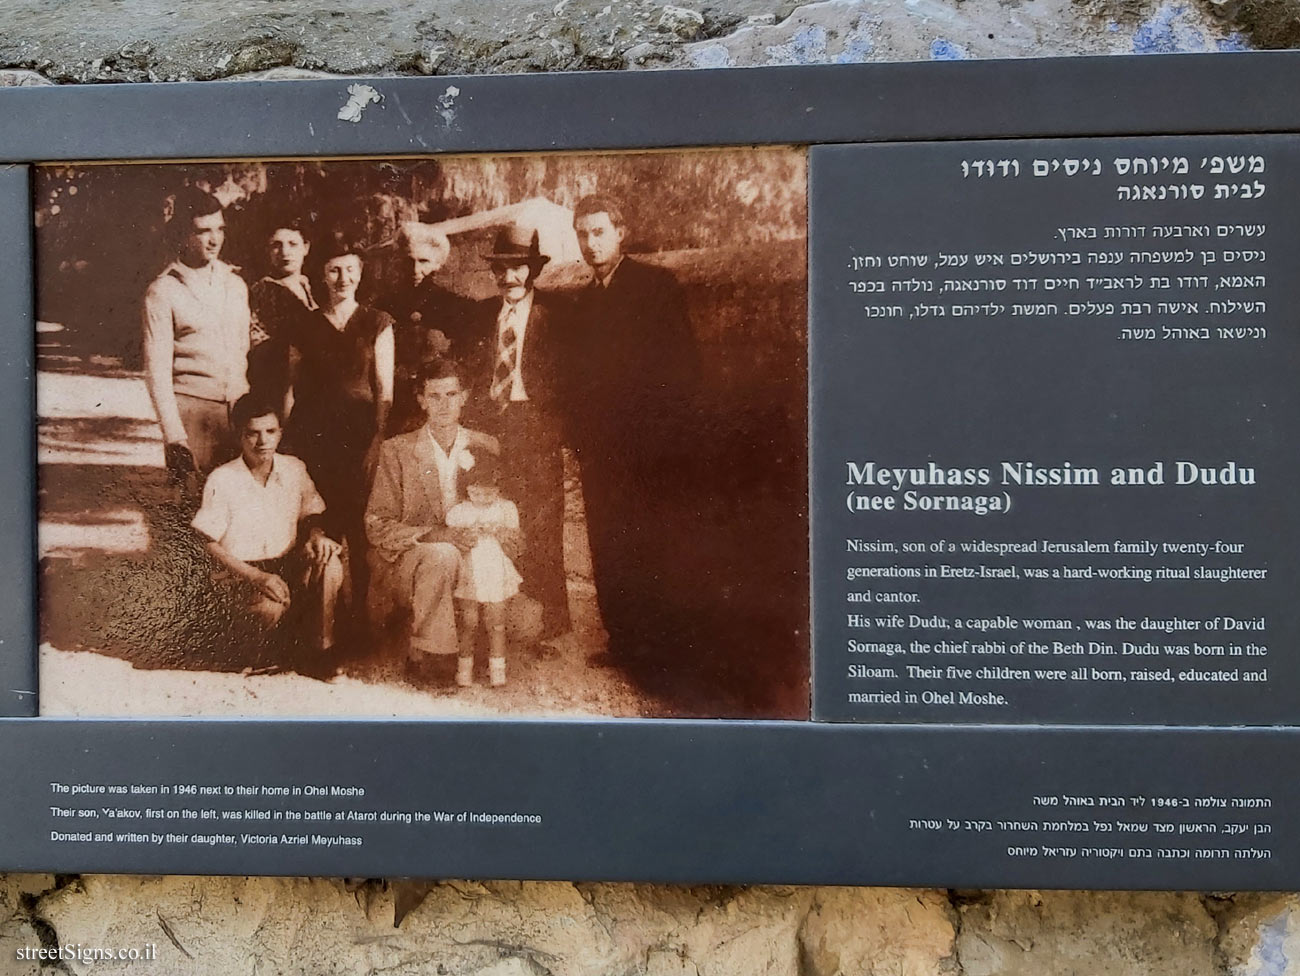 Jerusalem - Photograph in stone - Ohel Moshe - Meyuhass Nissim and Dudu